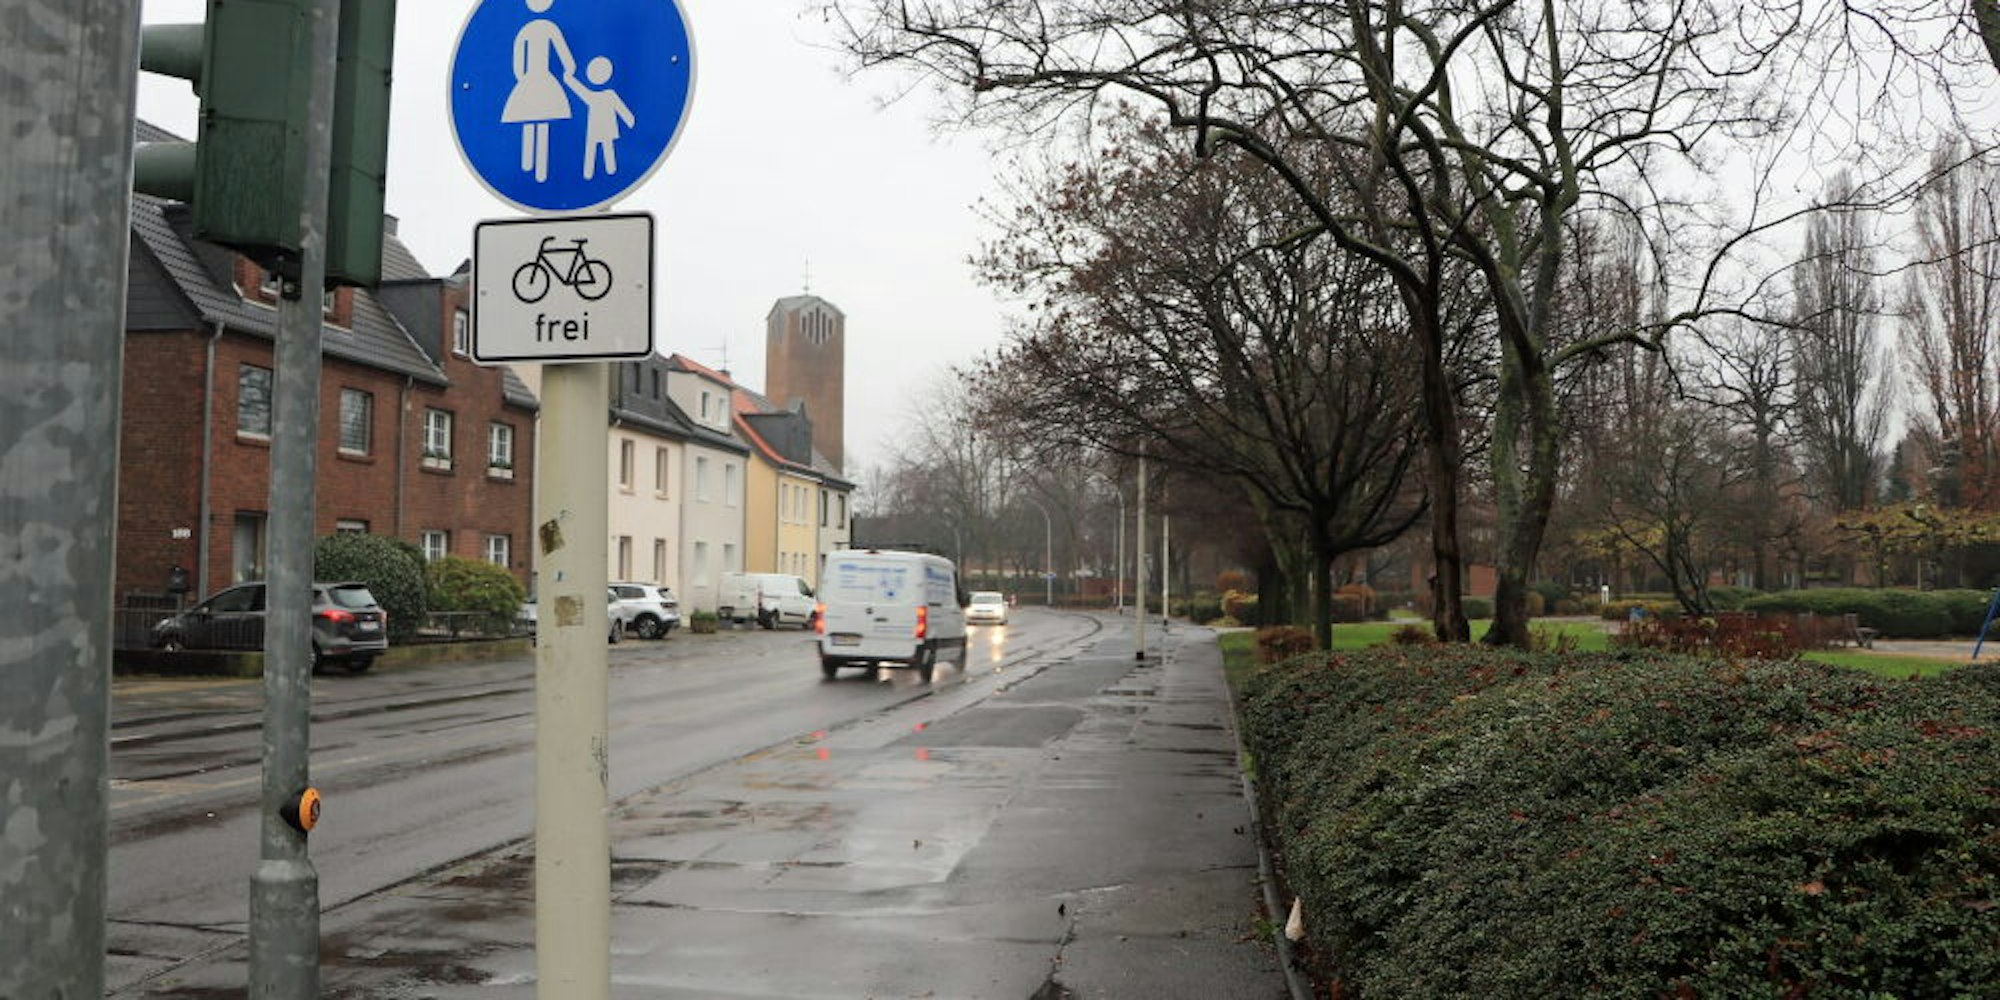 Auf der Hubert-Prott-Straße in Bachem soll ein Schutzstreifen für Fahrradfahrer angelegt werden.